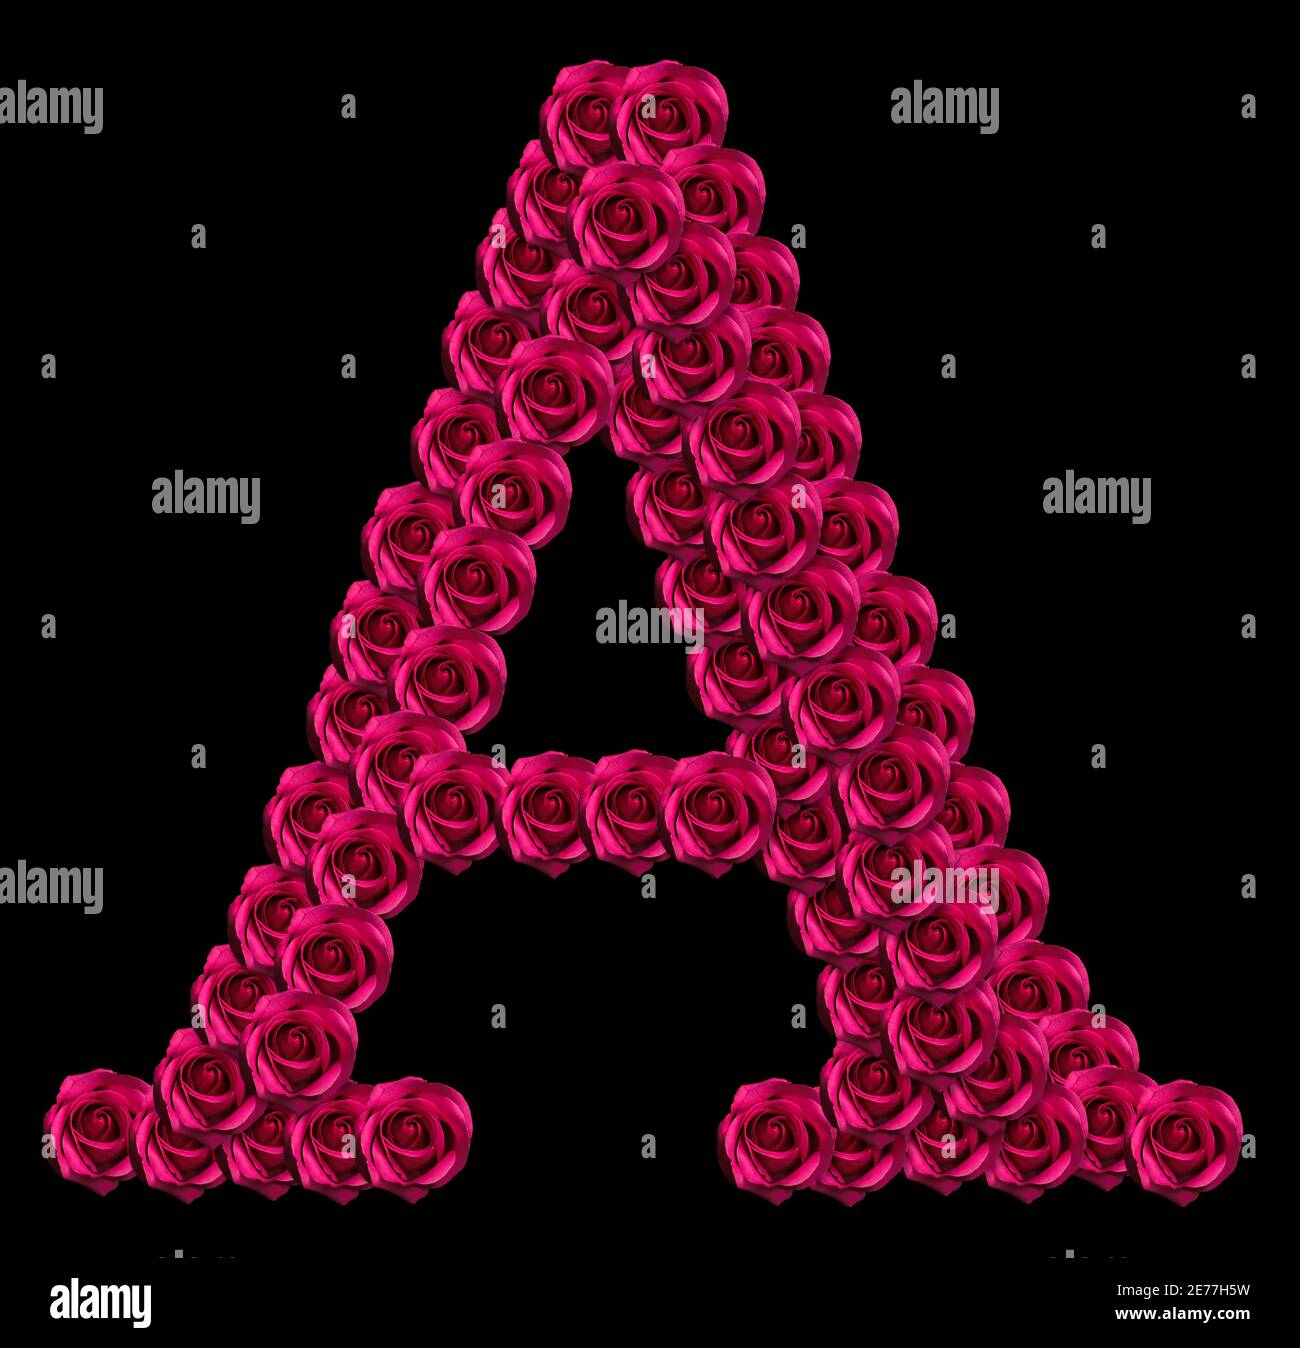 Romantique concept image d'une lettre majuscule A fait de roses rouges. Isolé sur fond noir. Élément de conception pour l'amour ou les thèmes de Saint-Valentin Banque D'Images